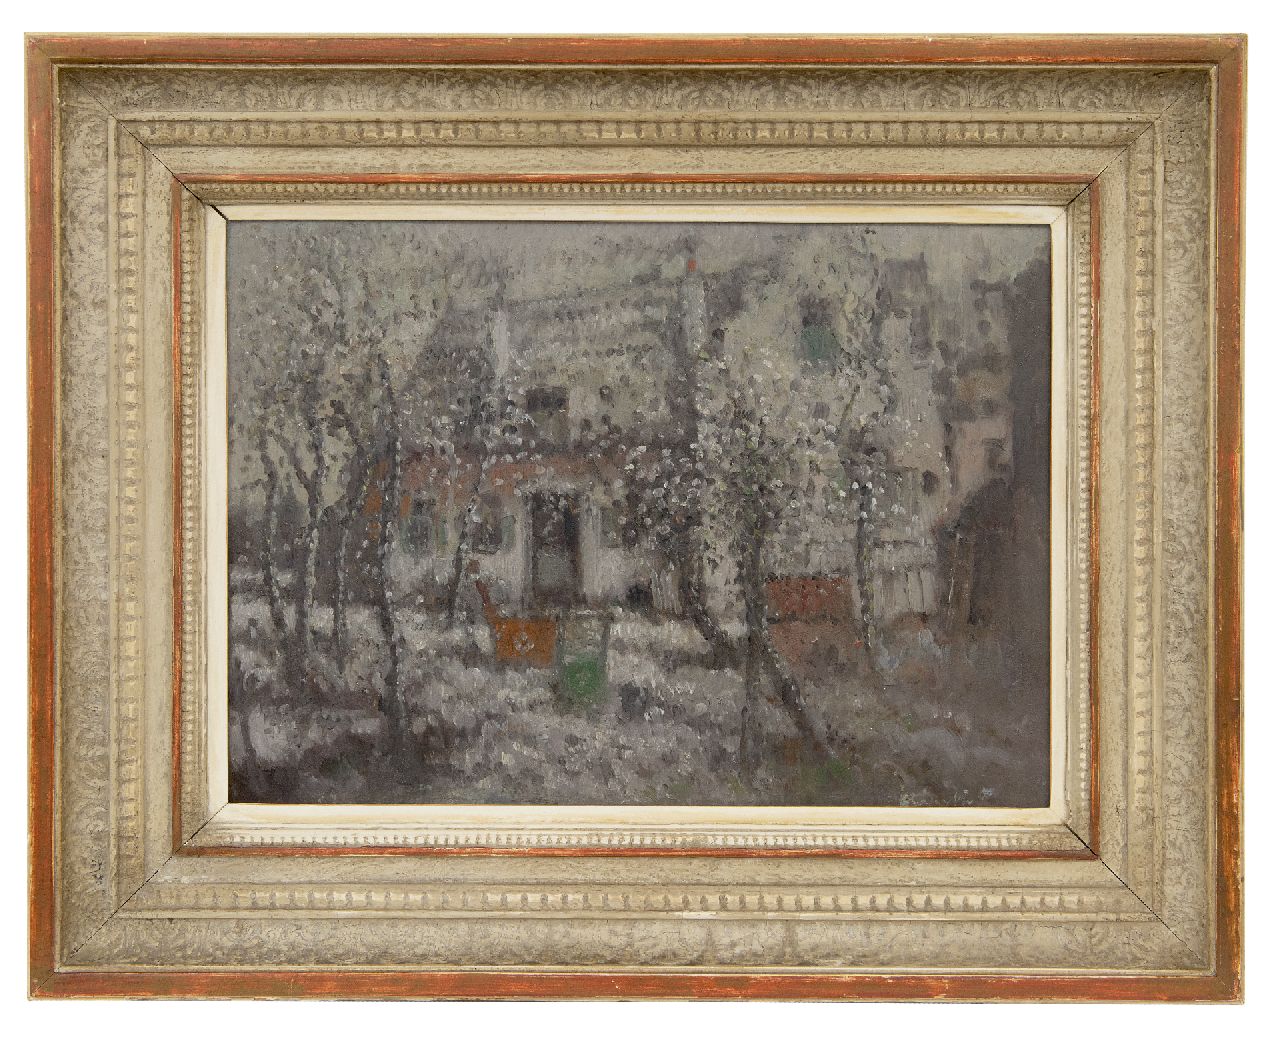 Daalhoff H.A. van | Hermanus Antonius 'Henri' van Daalhoff | Schilderijen te koop aangeboden | Wintertje, olieverf op paneel 25,5 x 35,5 cm, gesigneerd rechtsonder en verso